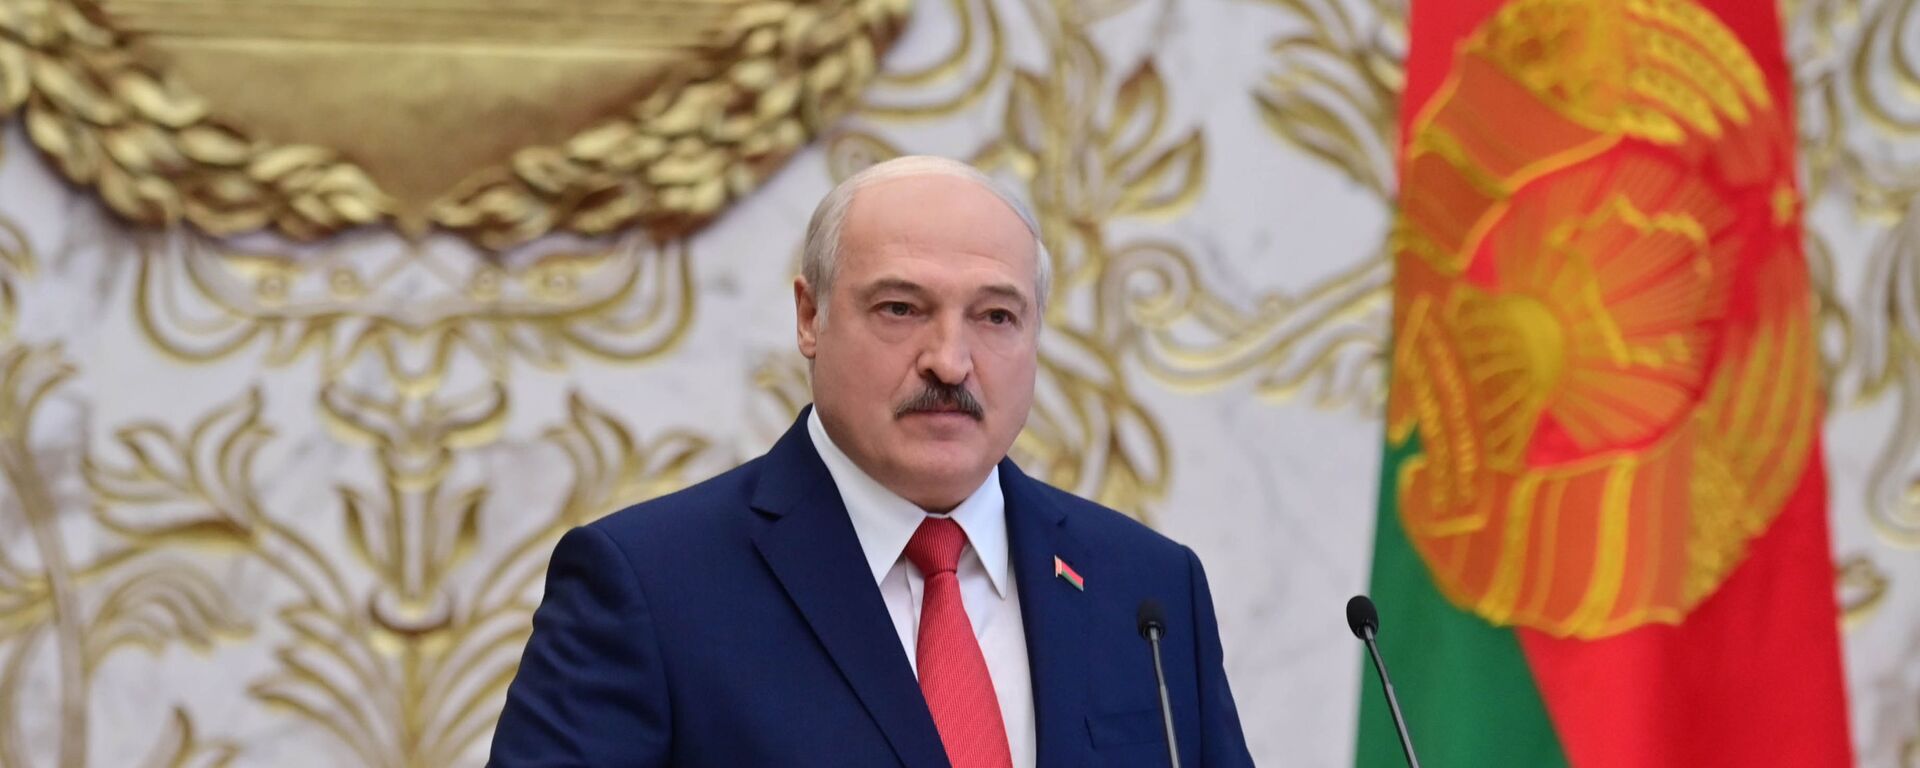 La investidura de Alexandr Lukashenko en Bielorrusia - Sputnik Mundo, 1920, 29.01.2021